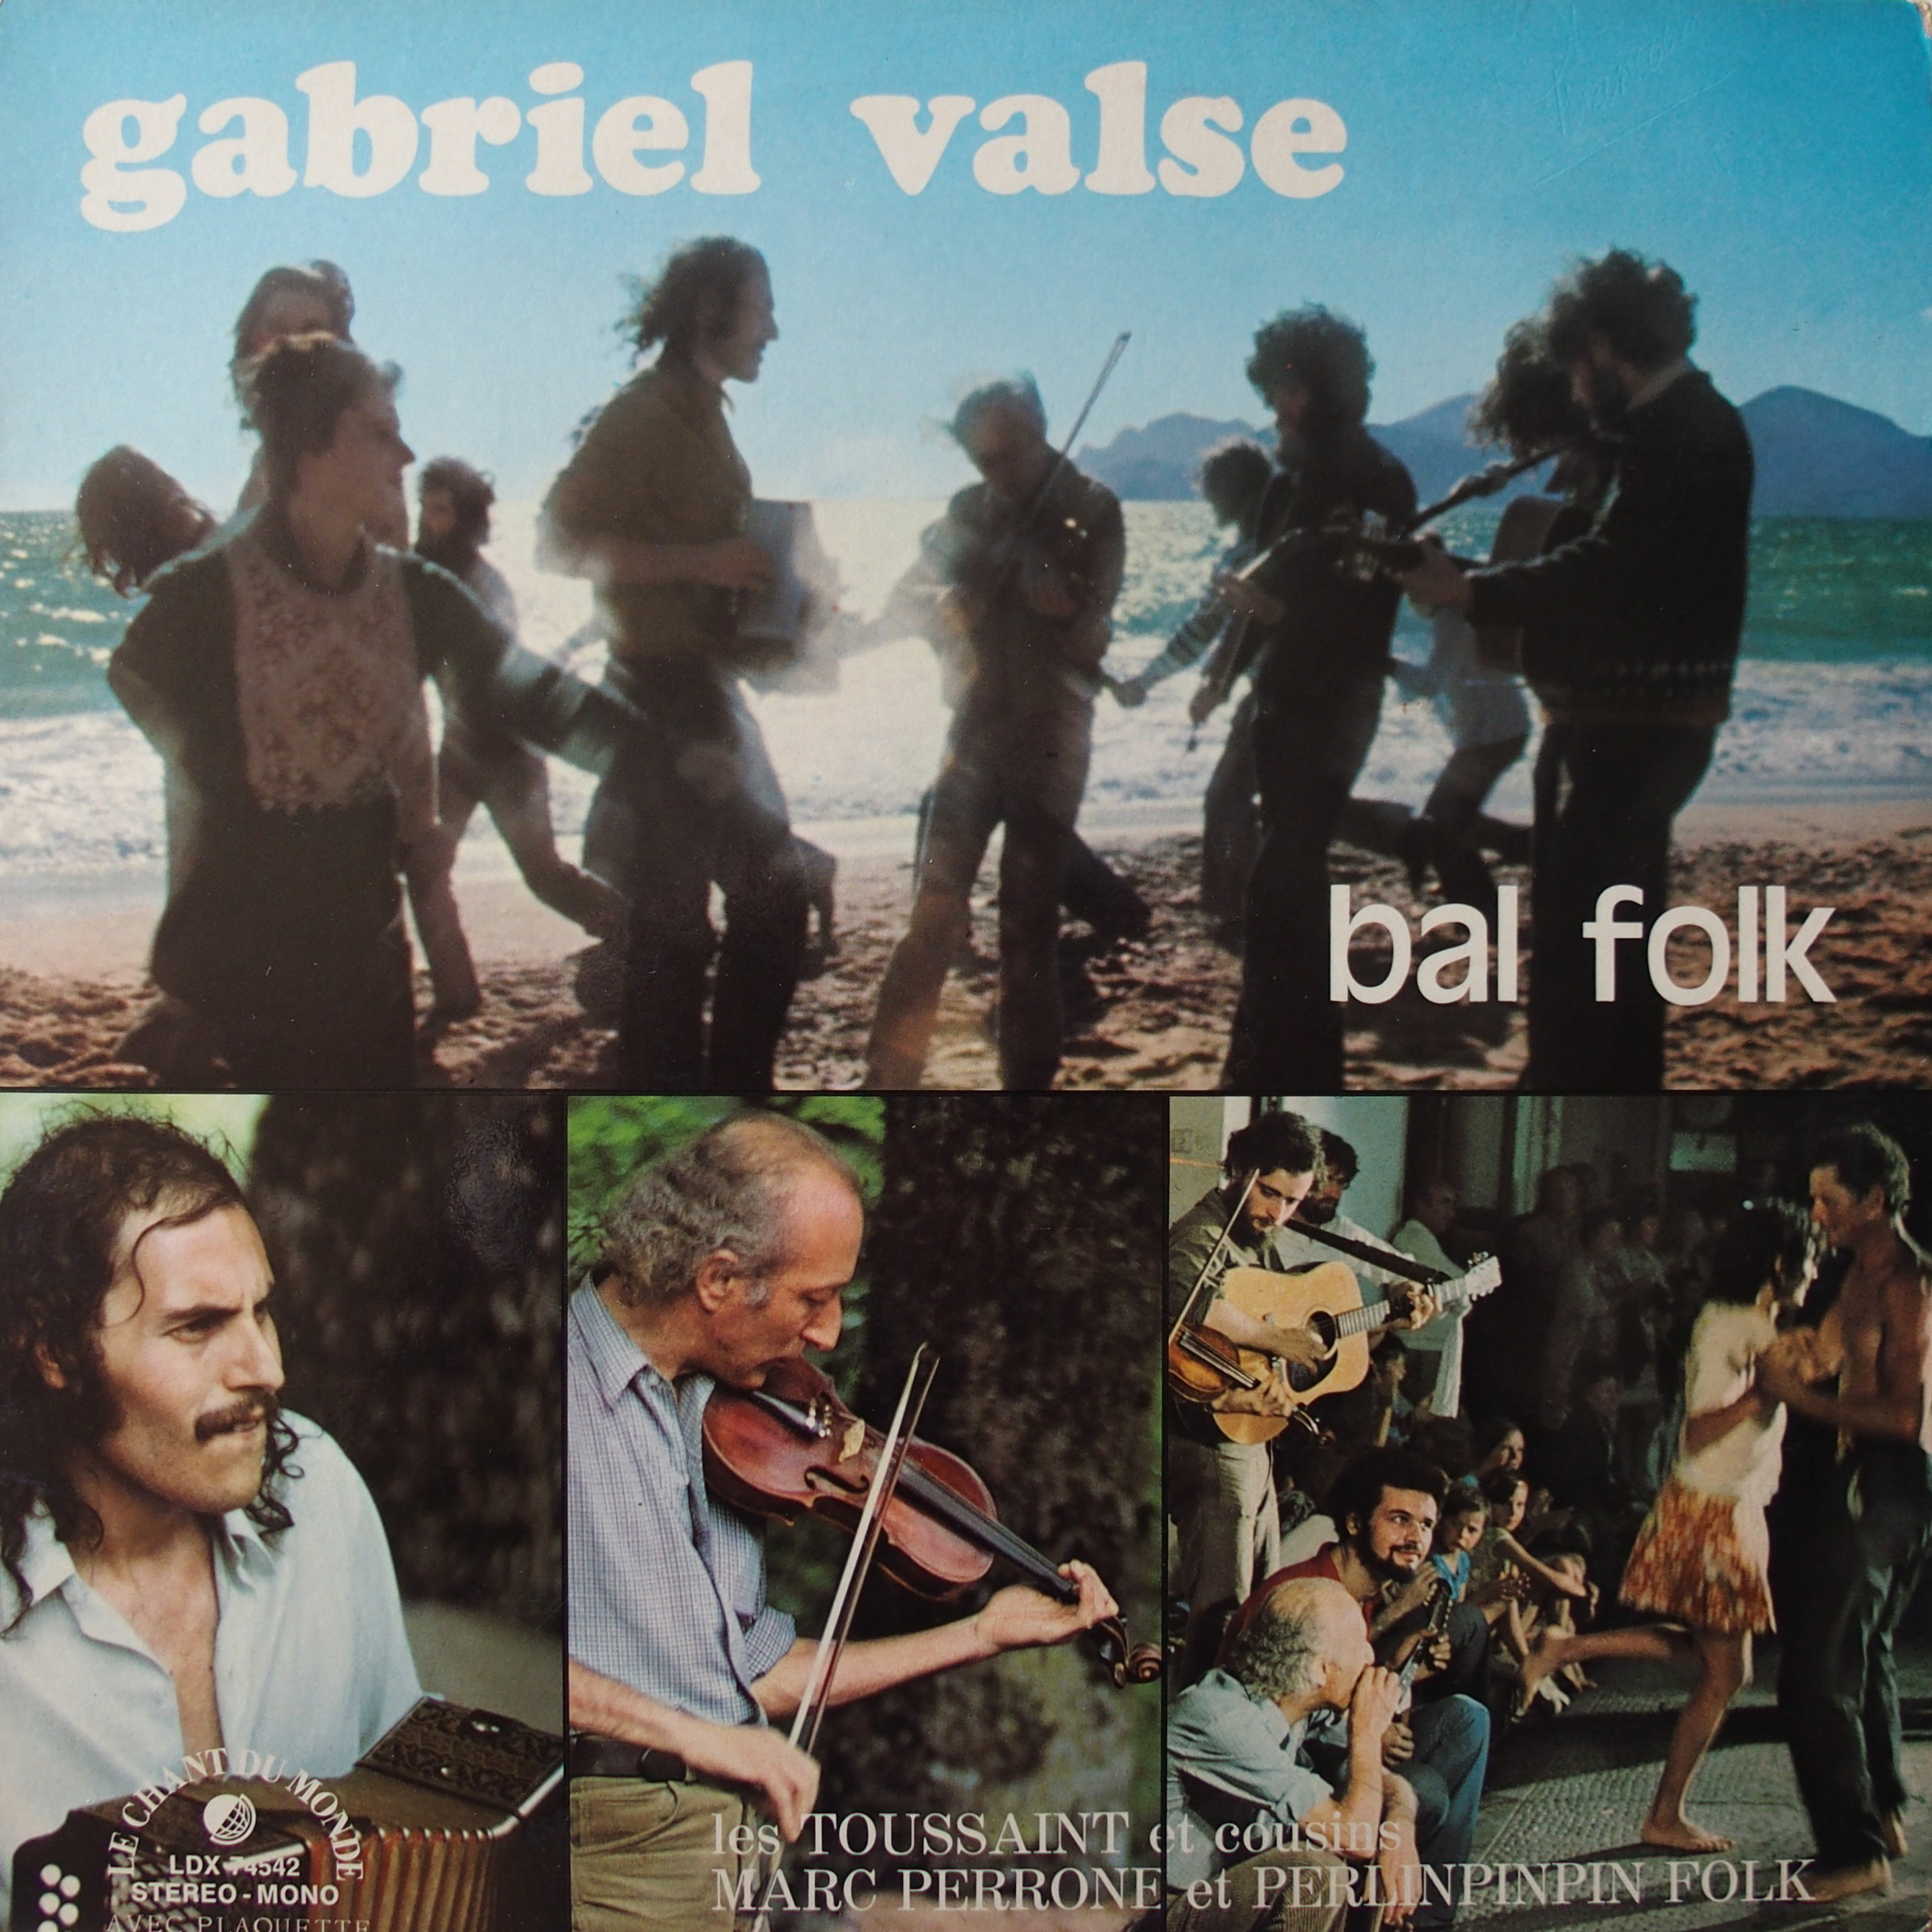 Couverture de l'album Gabriel valse Marc Perrone